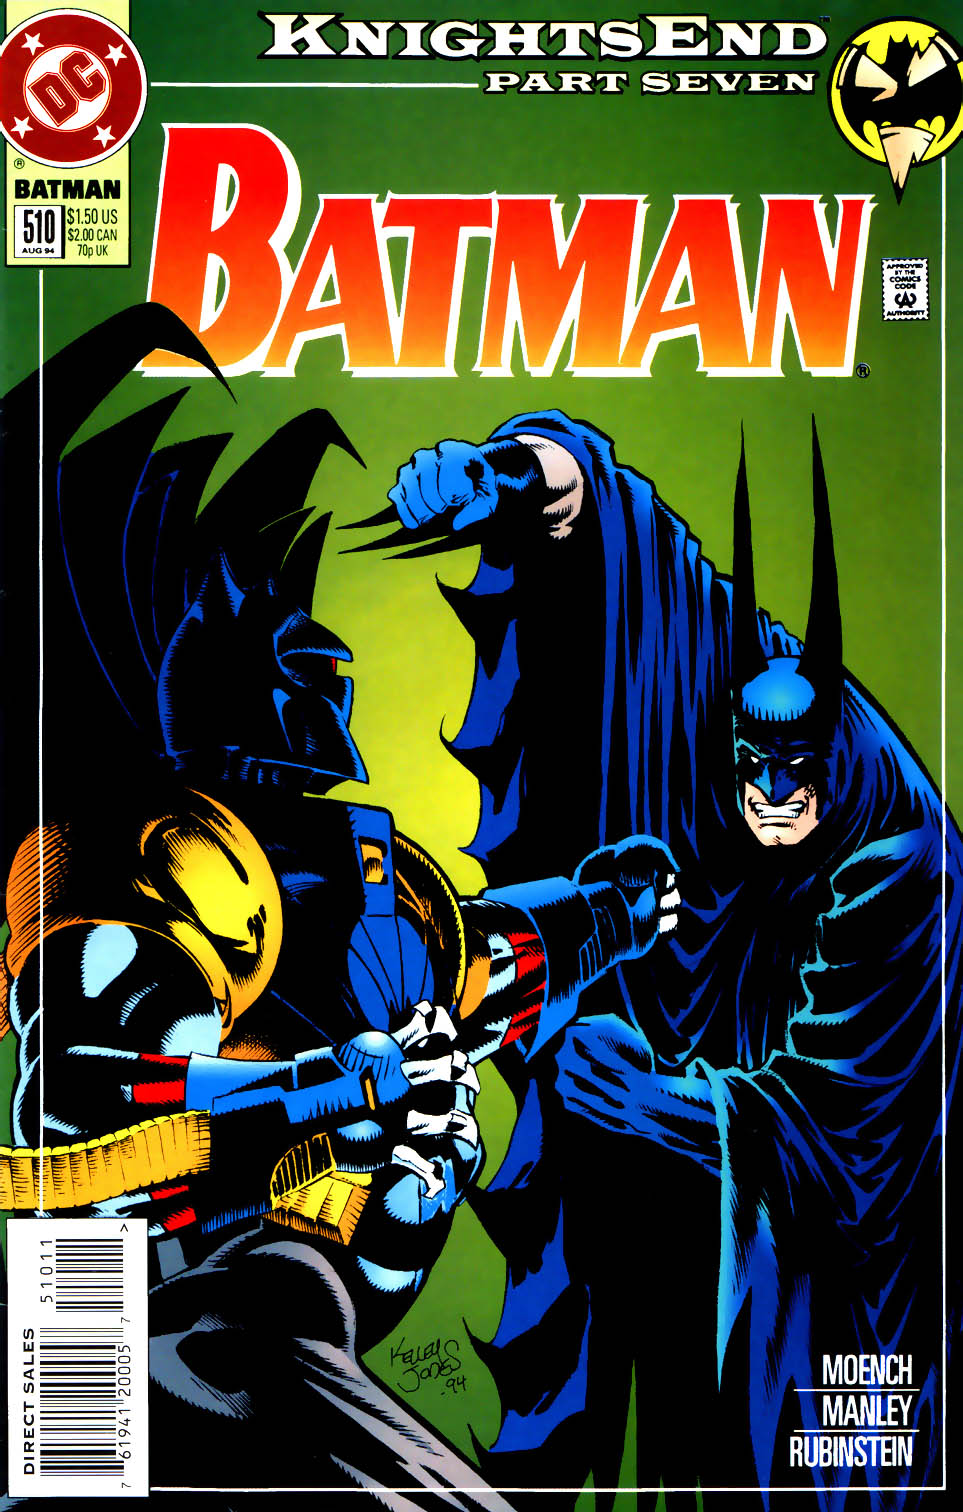 Batman Knightfall Knightsend Issue 07 | Read Batman Knightfall Knightsend  Issue 07 comic online in high quality. Read Full Comic online for free -  Read comics online in high quality .| READ COMIC ONLINE